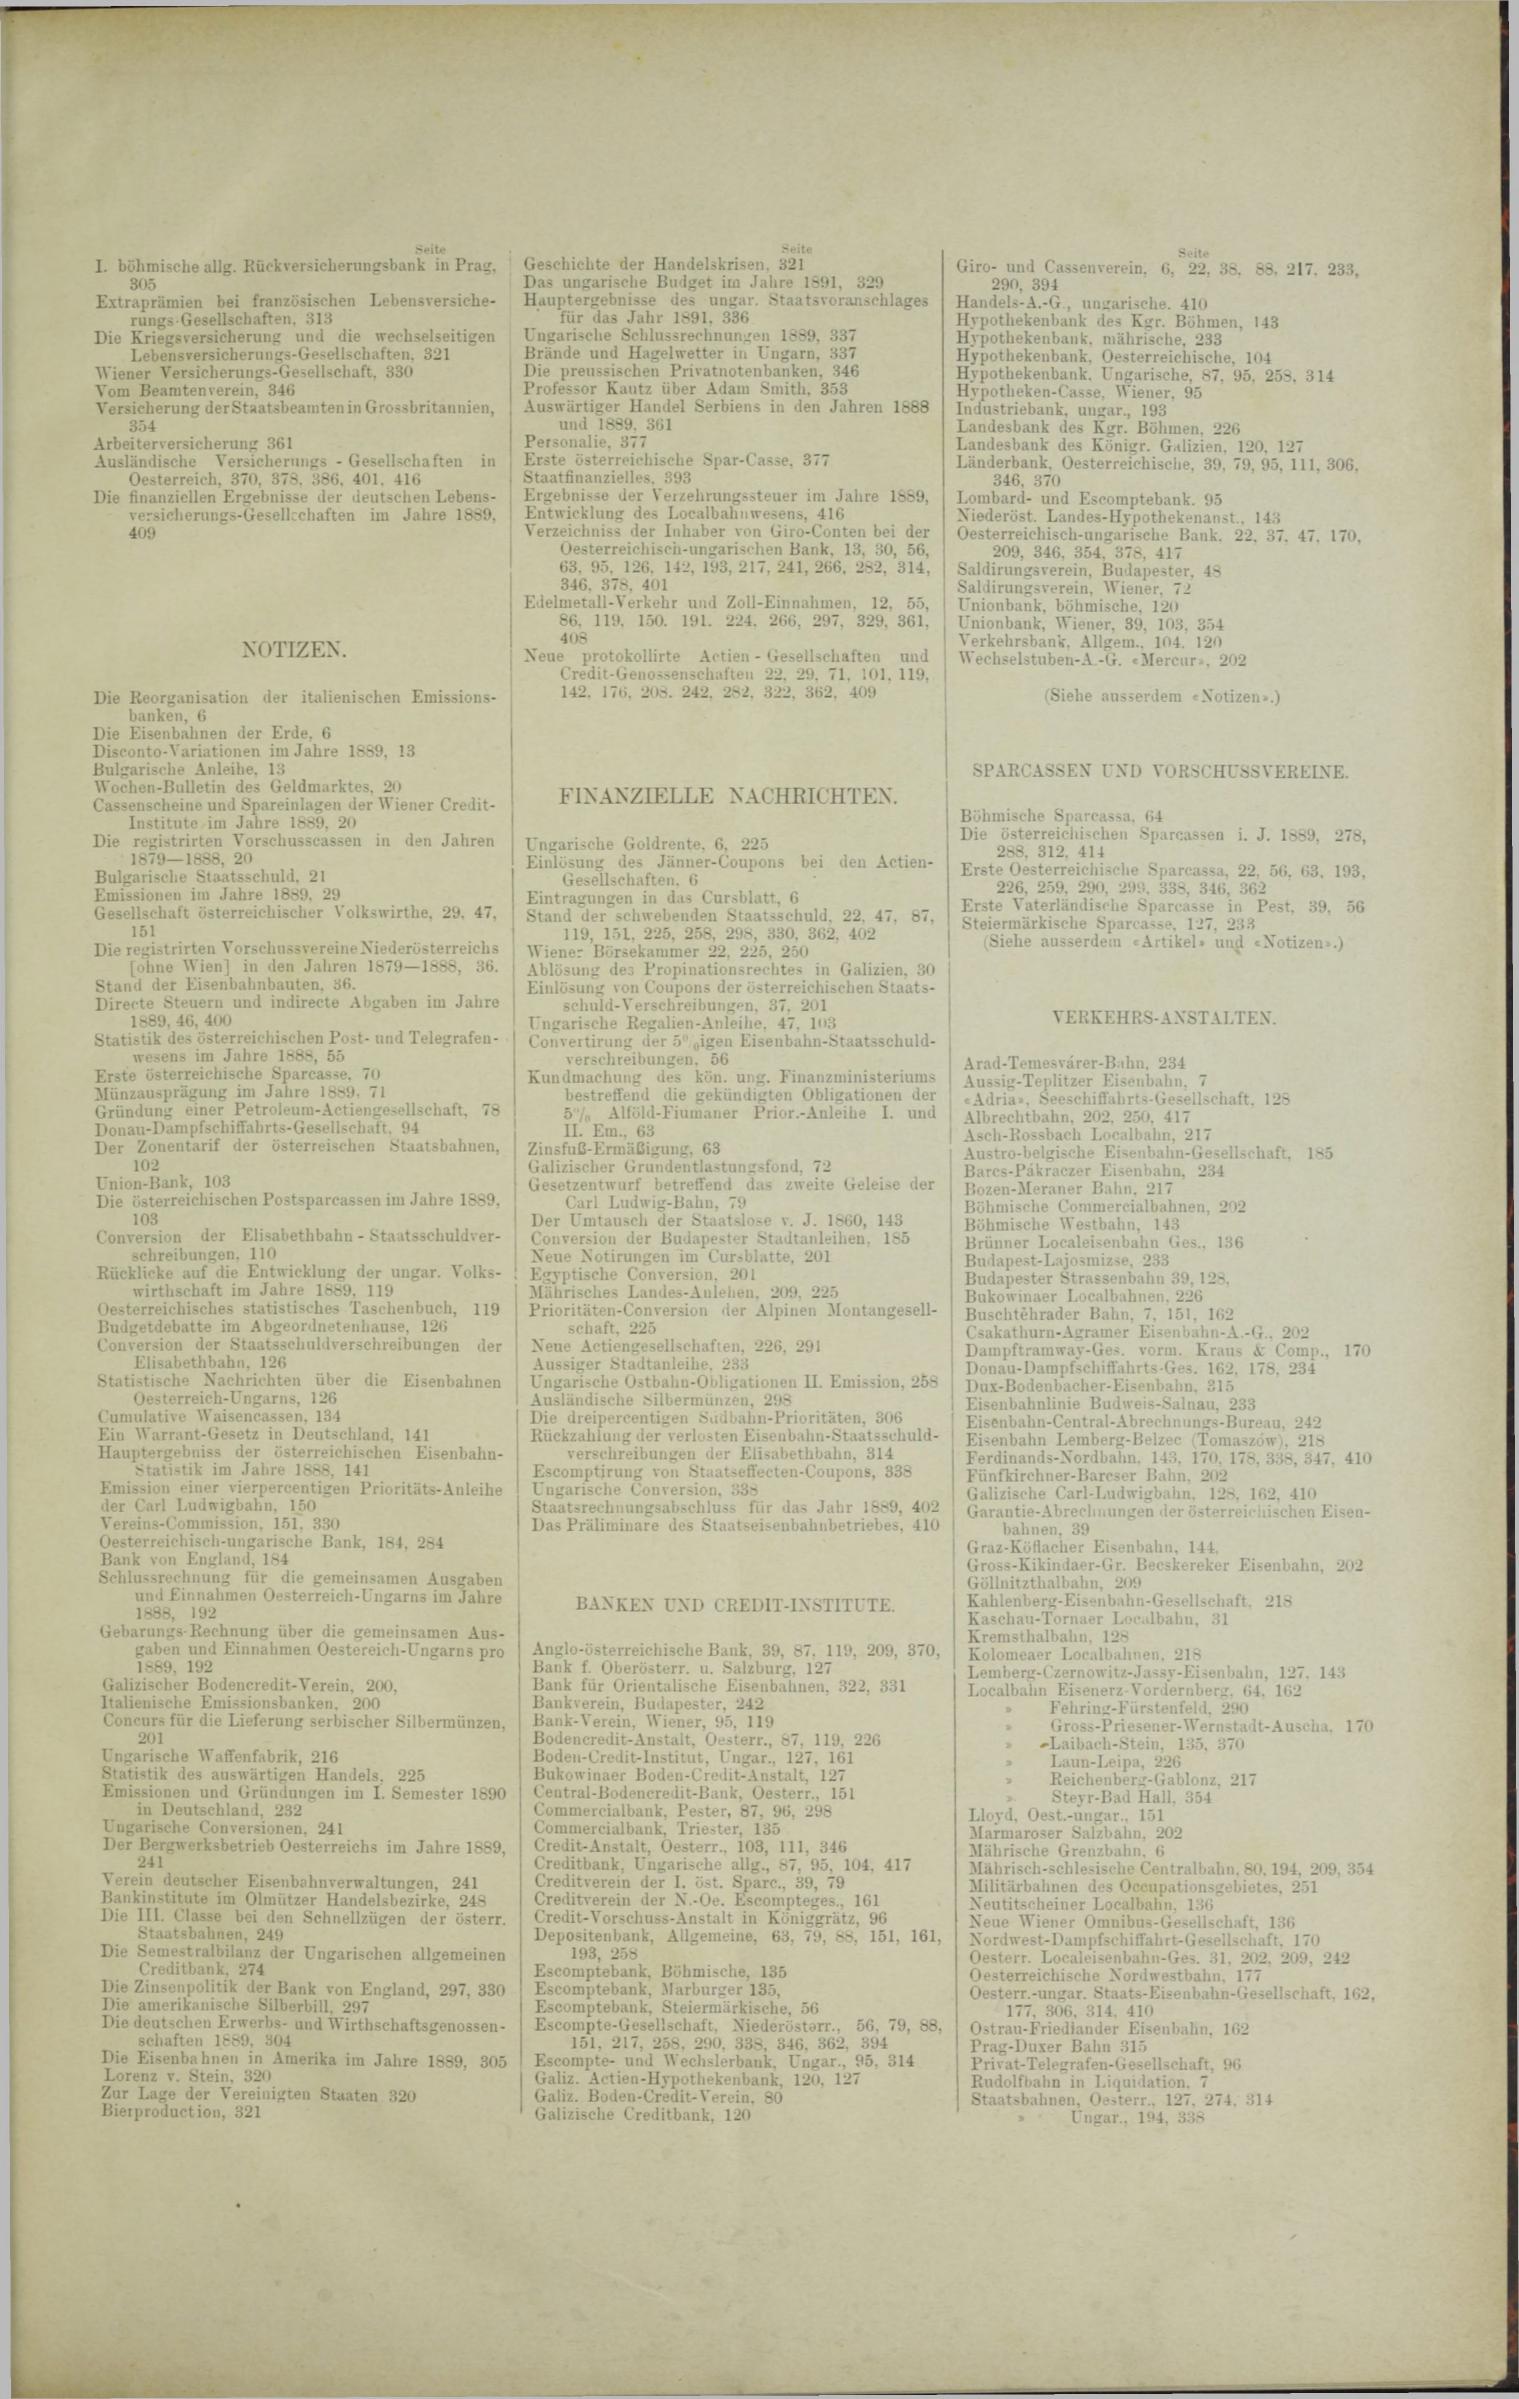 Der Tresor 22.05.1890 - Seite 11